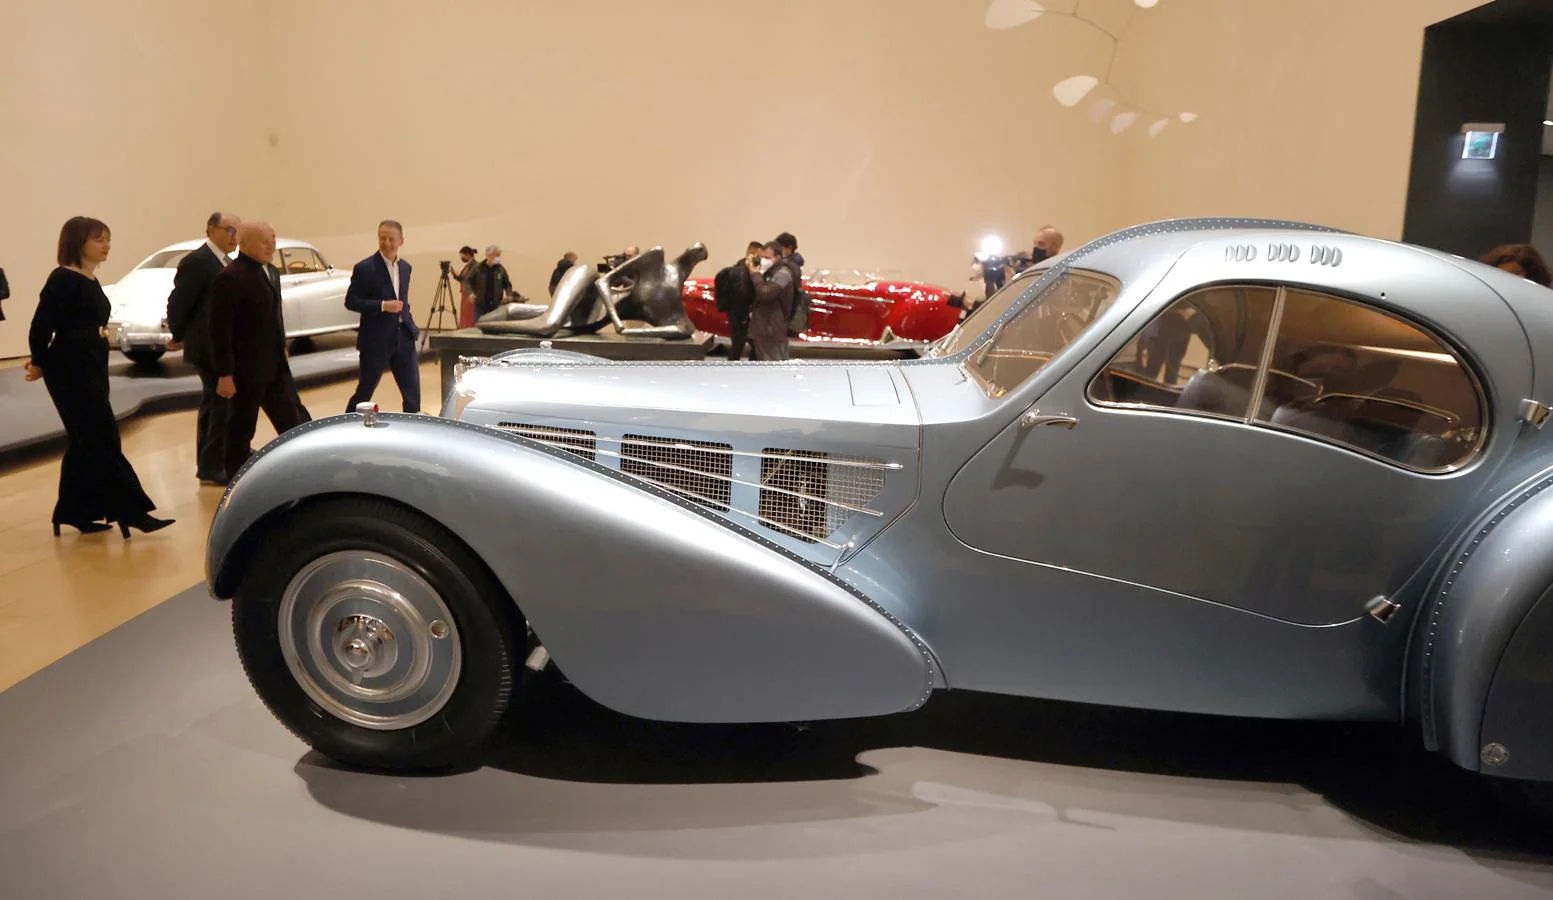 En imágenes: ¿Puede un coche ser una obra de arte? Norman Foster dice sí